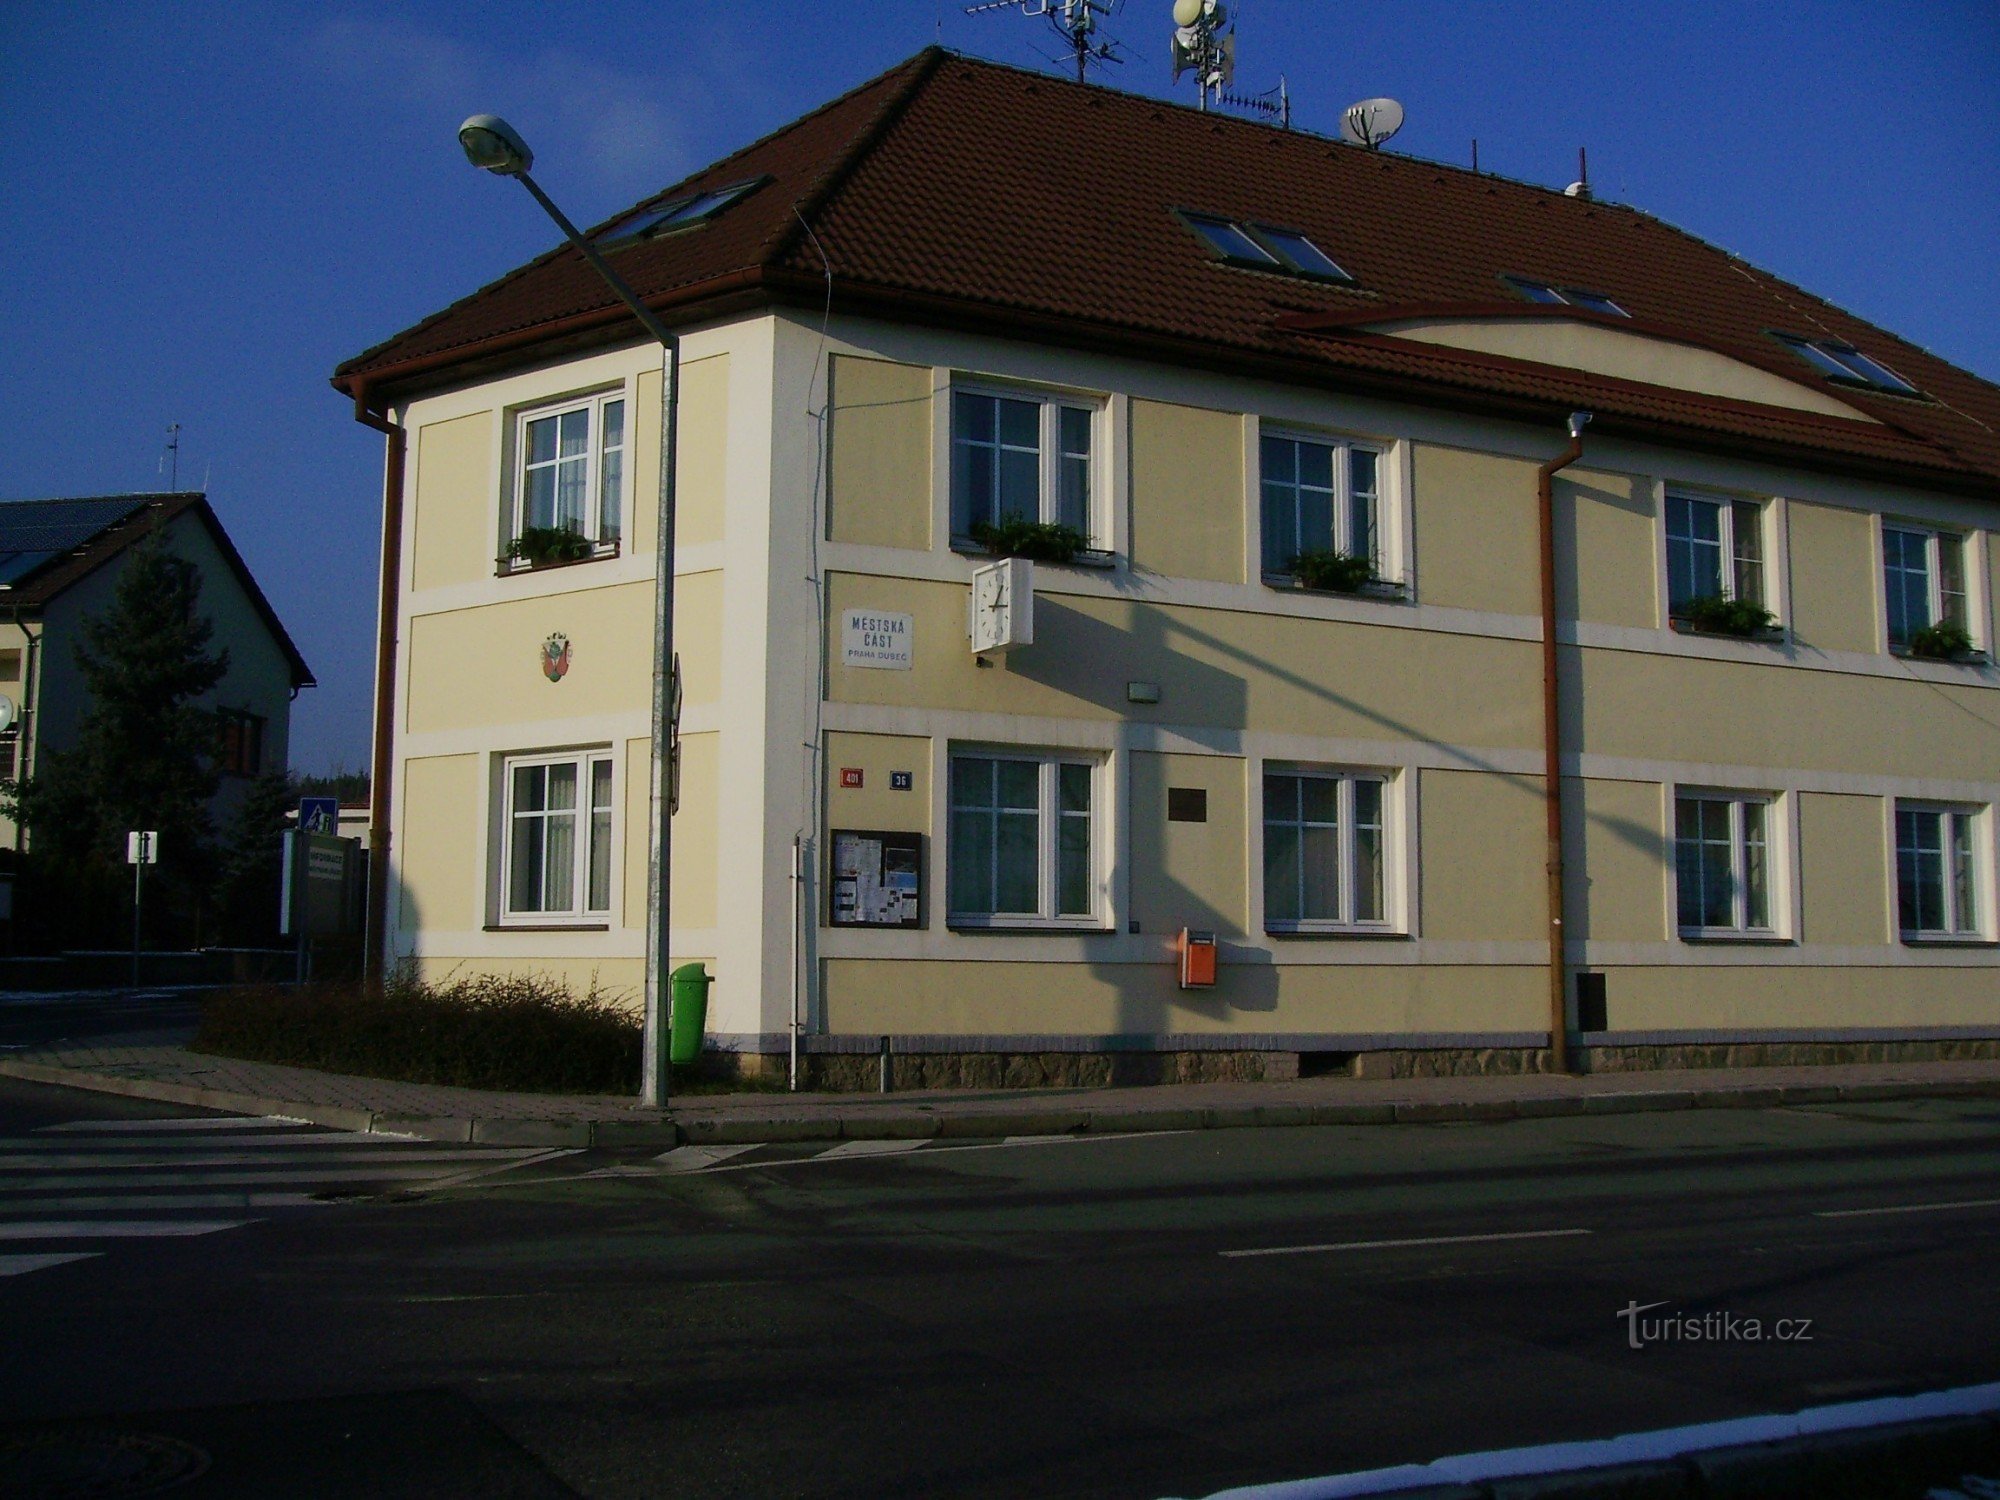 Escritório do Distrito Municipal de Praga - Dubeč